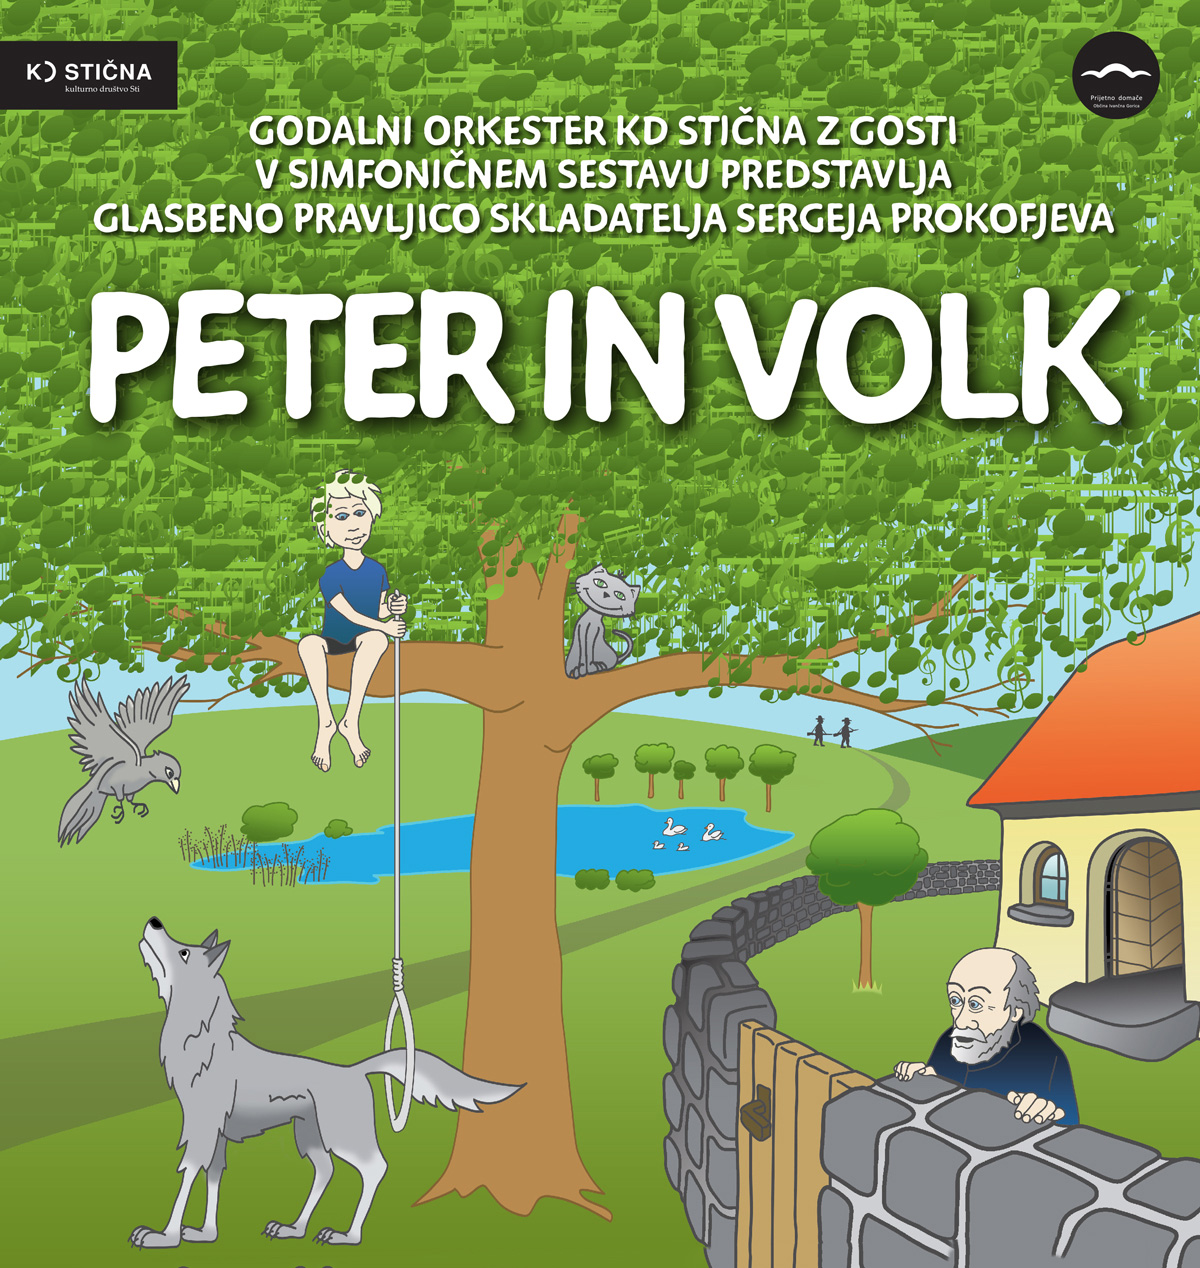 Peter-in-volk2015_1200px